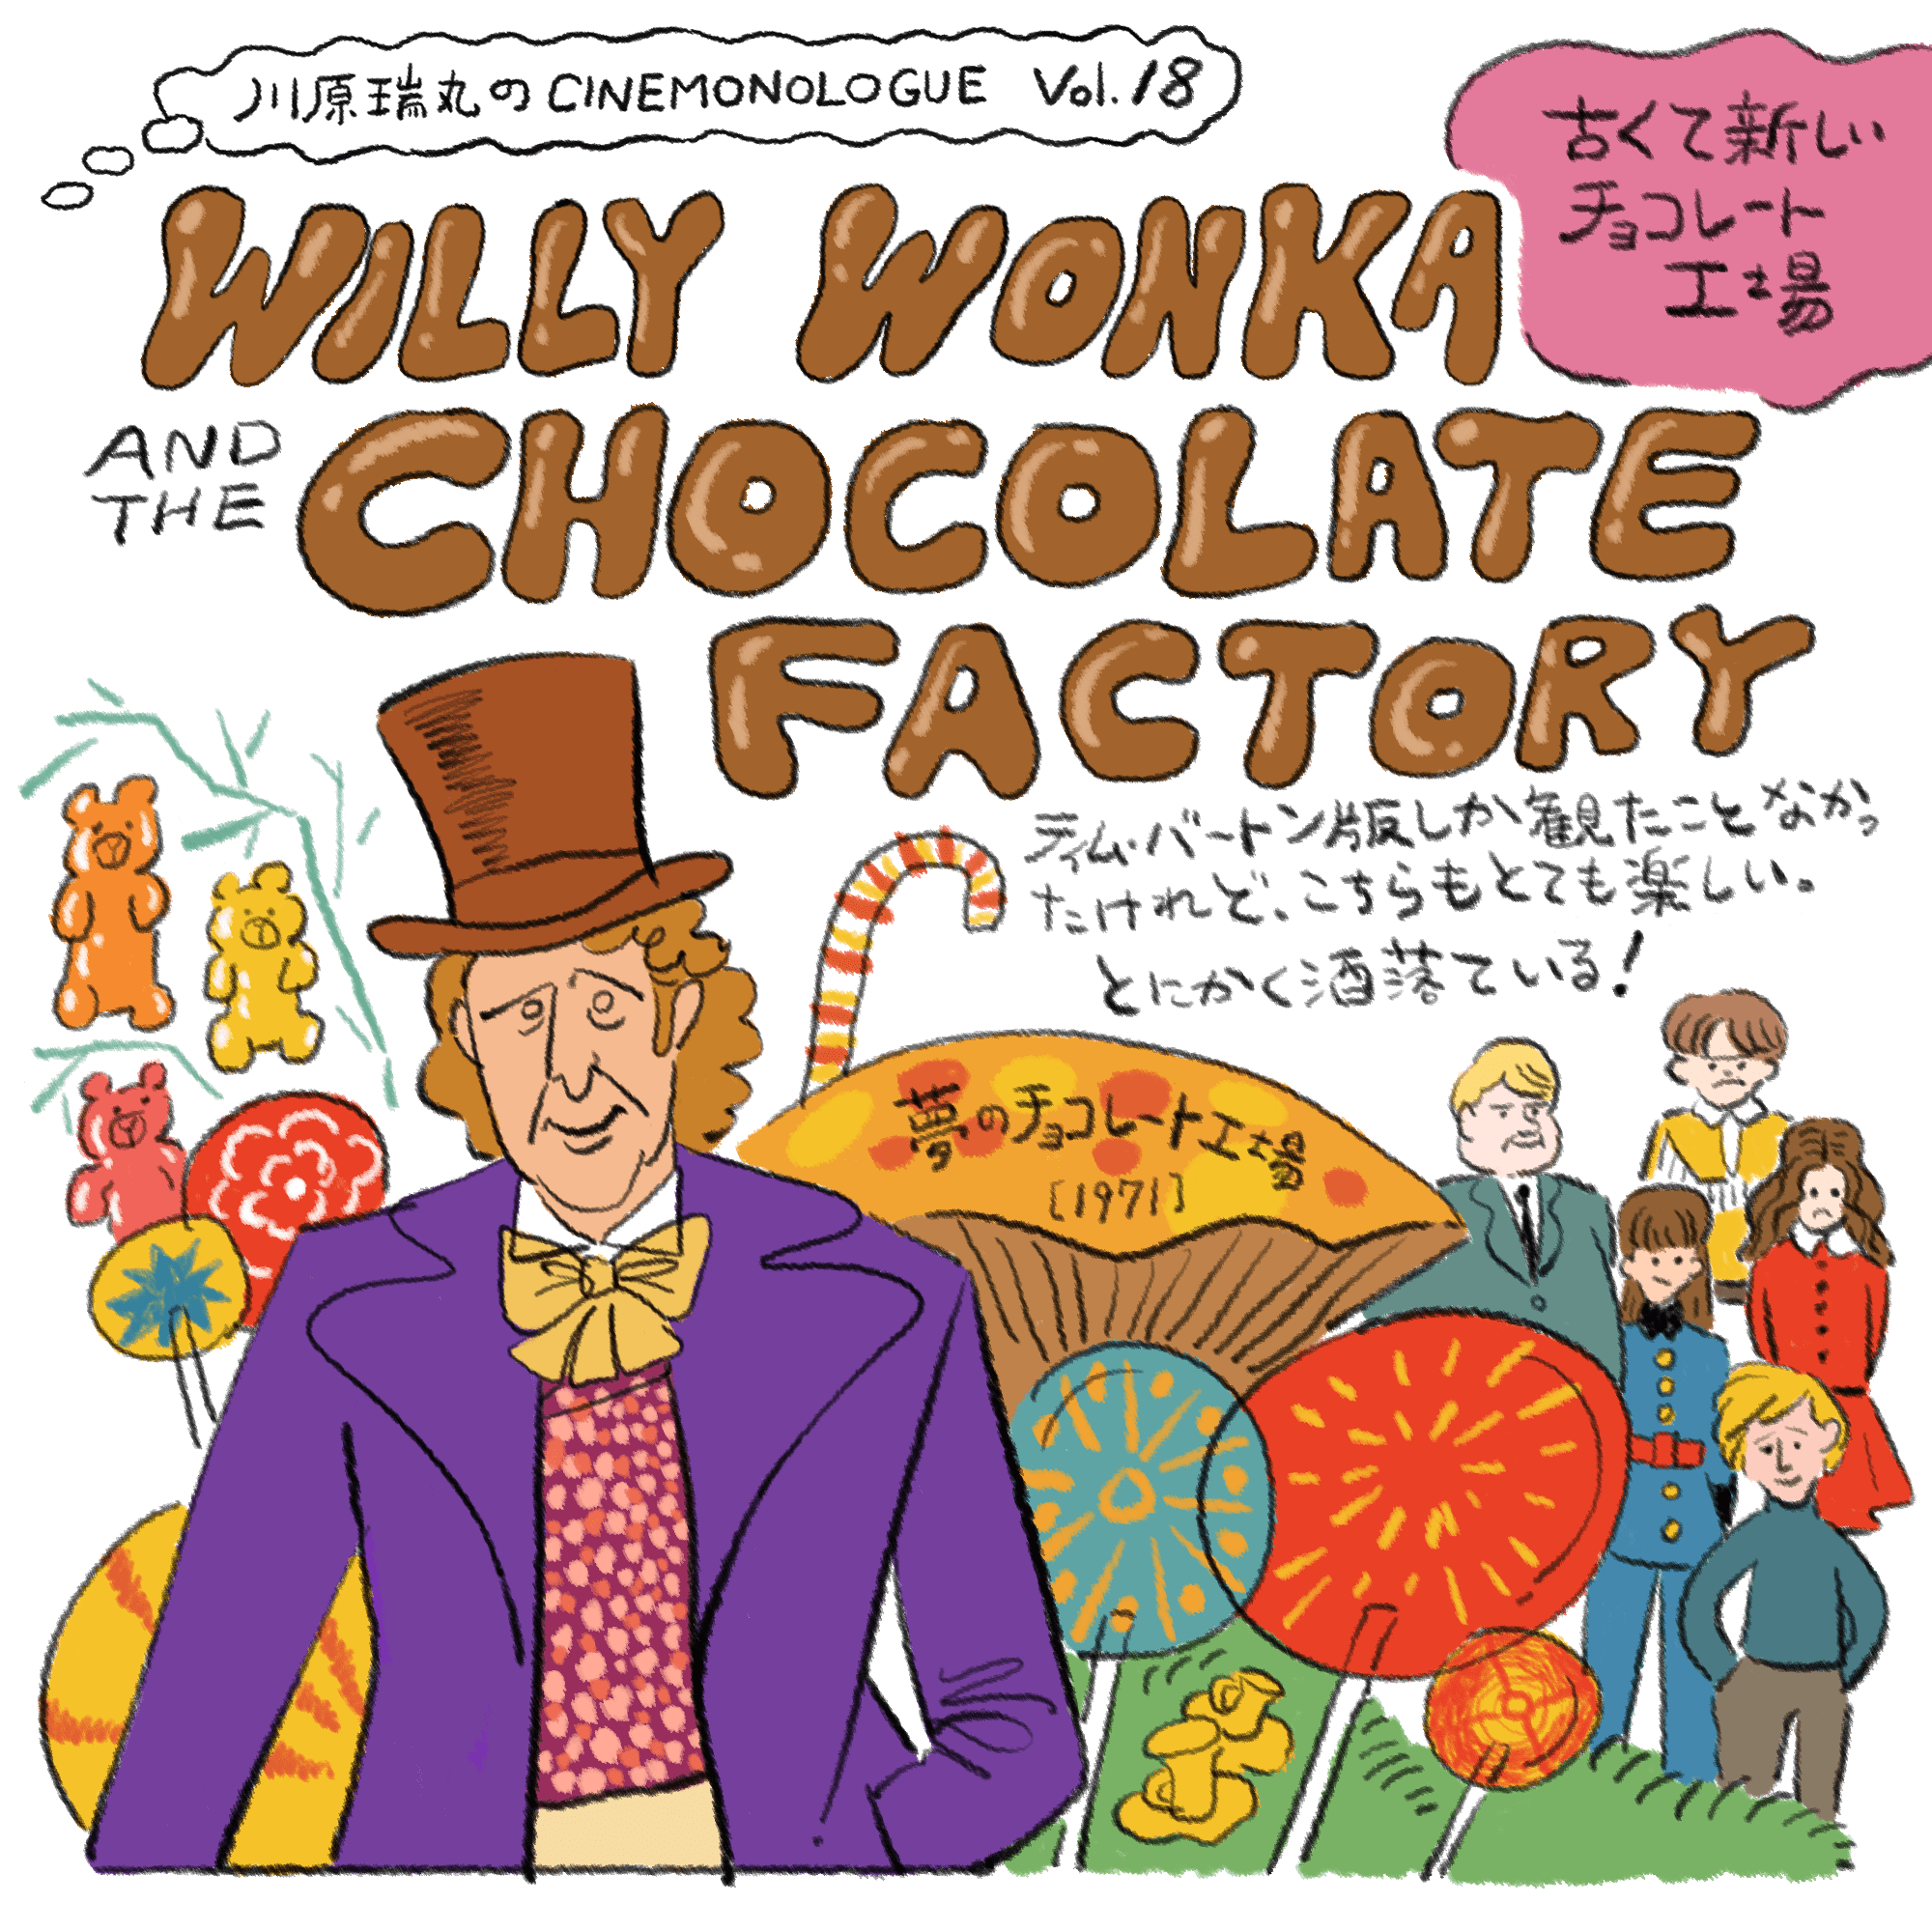 古くて新しいチョコレート工場【川原瑞丸のCINEMONOLOGUE Vol.18】